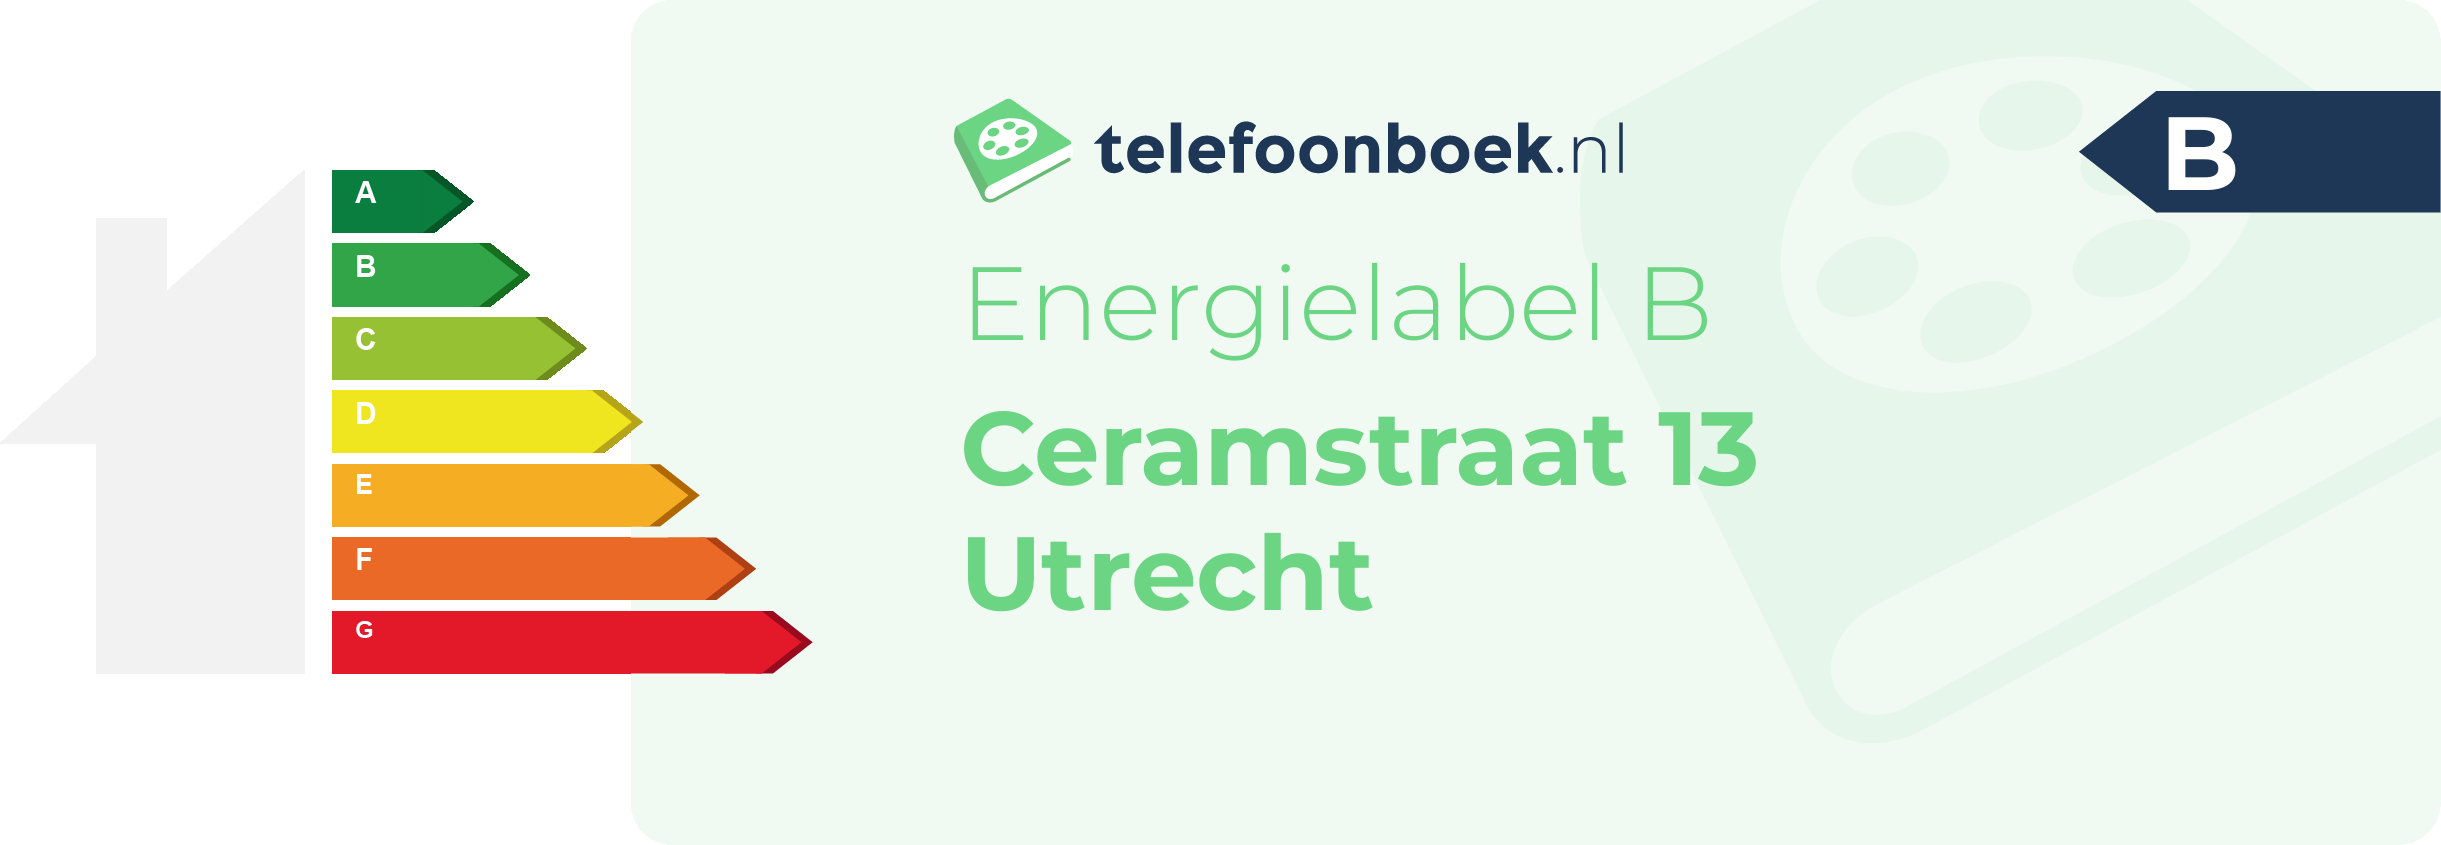 Energielabel Ceramstraat 13 Utrecht